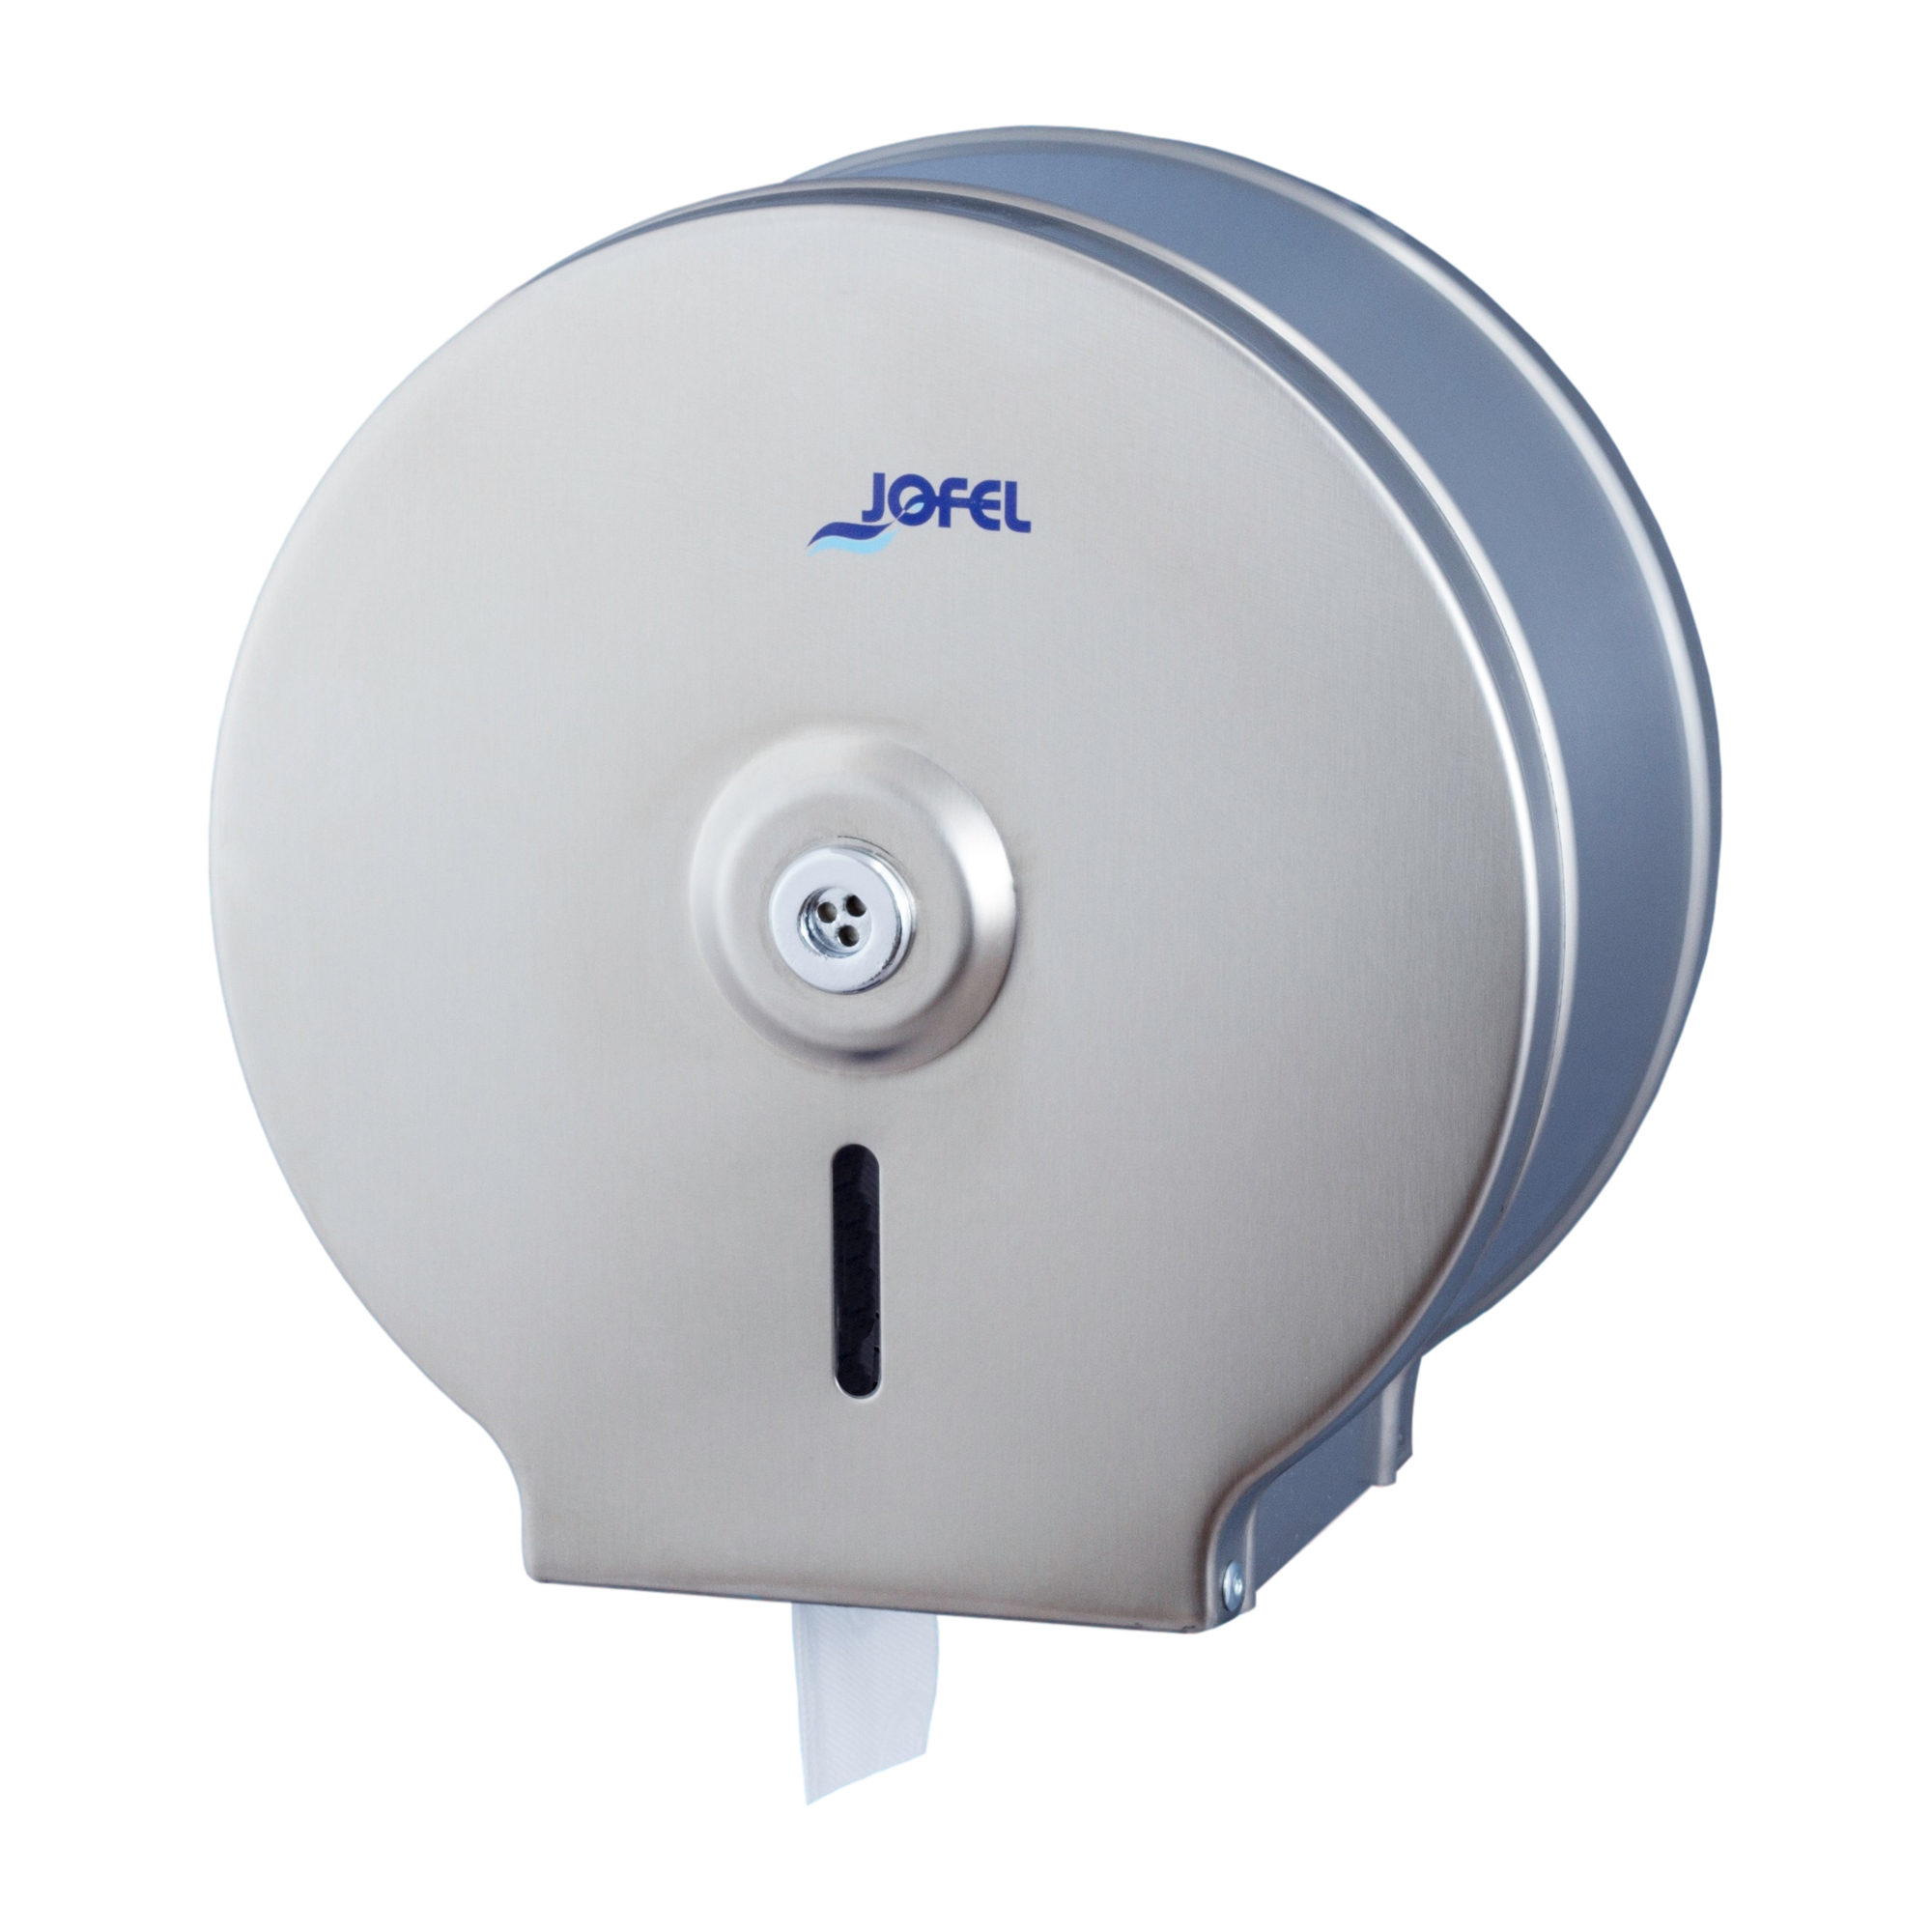 Jofel Inox Toilettenpapierspender Midi Jumbo Edelstahl gebürstet AE21000_1